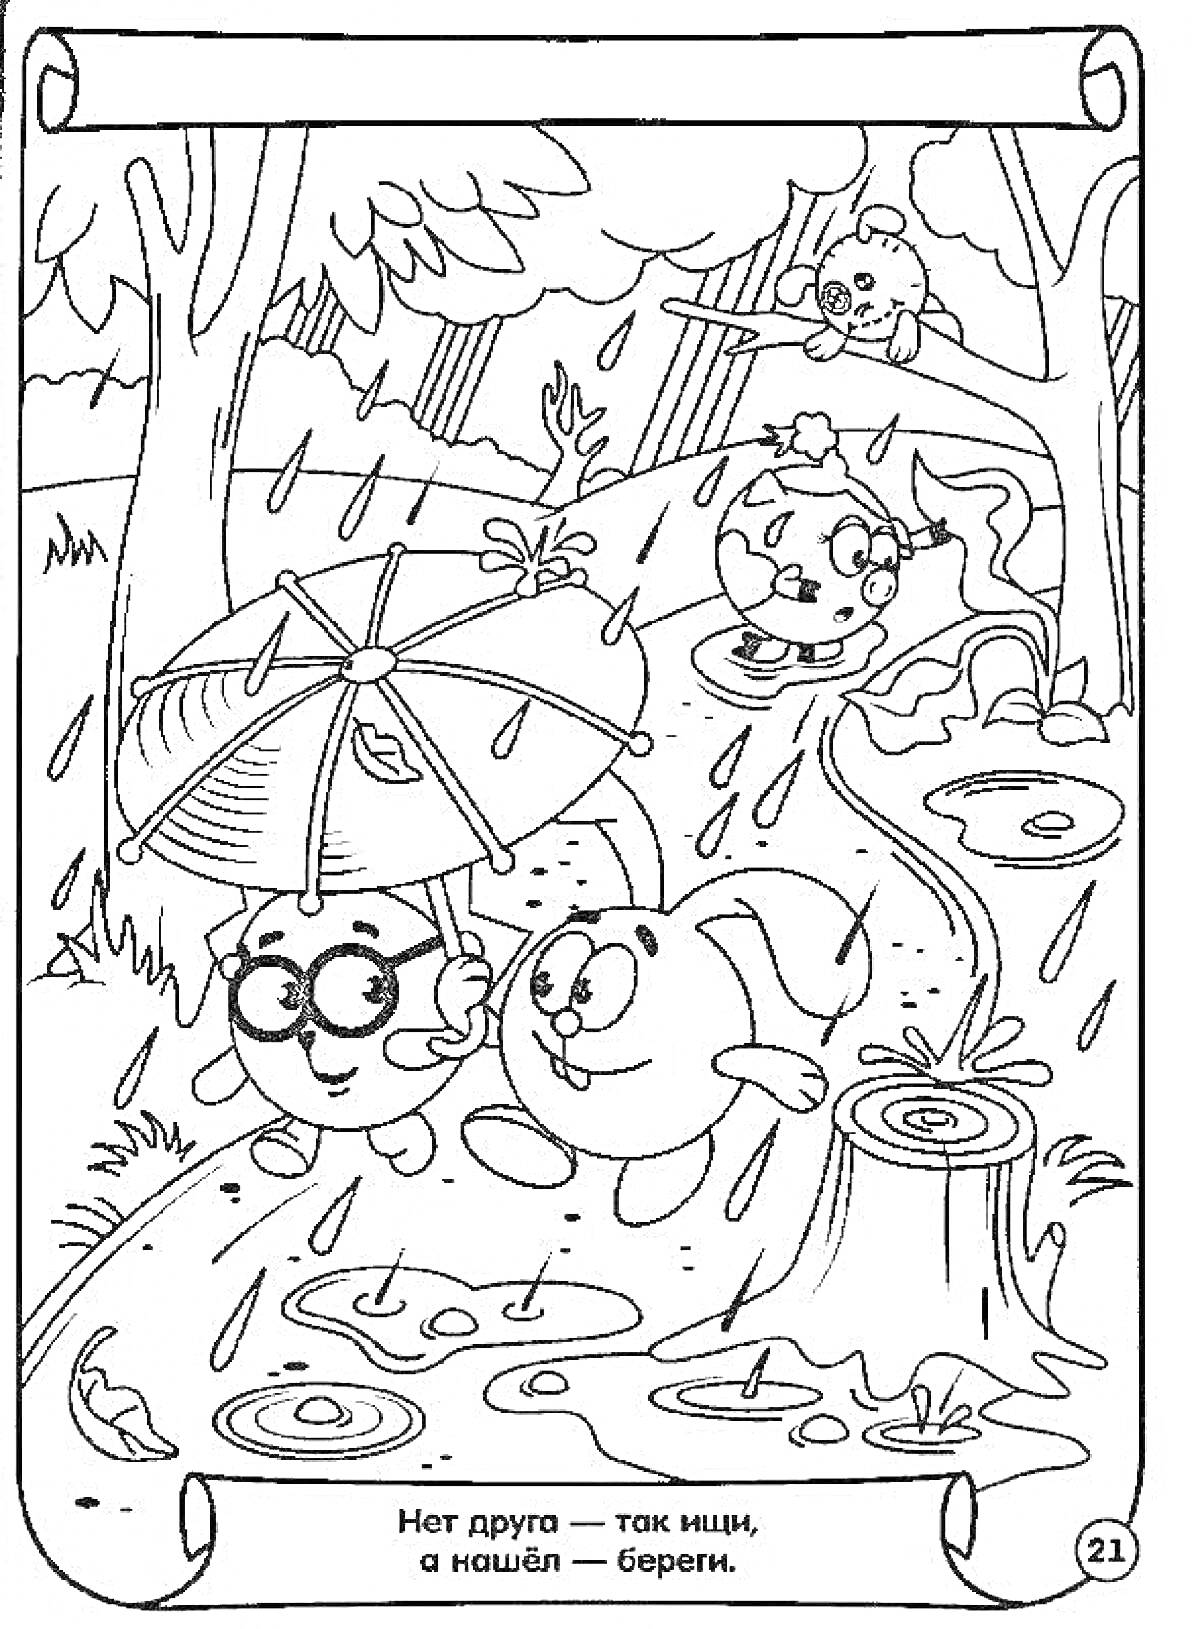 РаскраскаСмешарики под дождём: Лосяш, Нюша, Ёжик и Пин в лесу после дождя